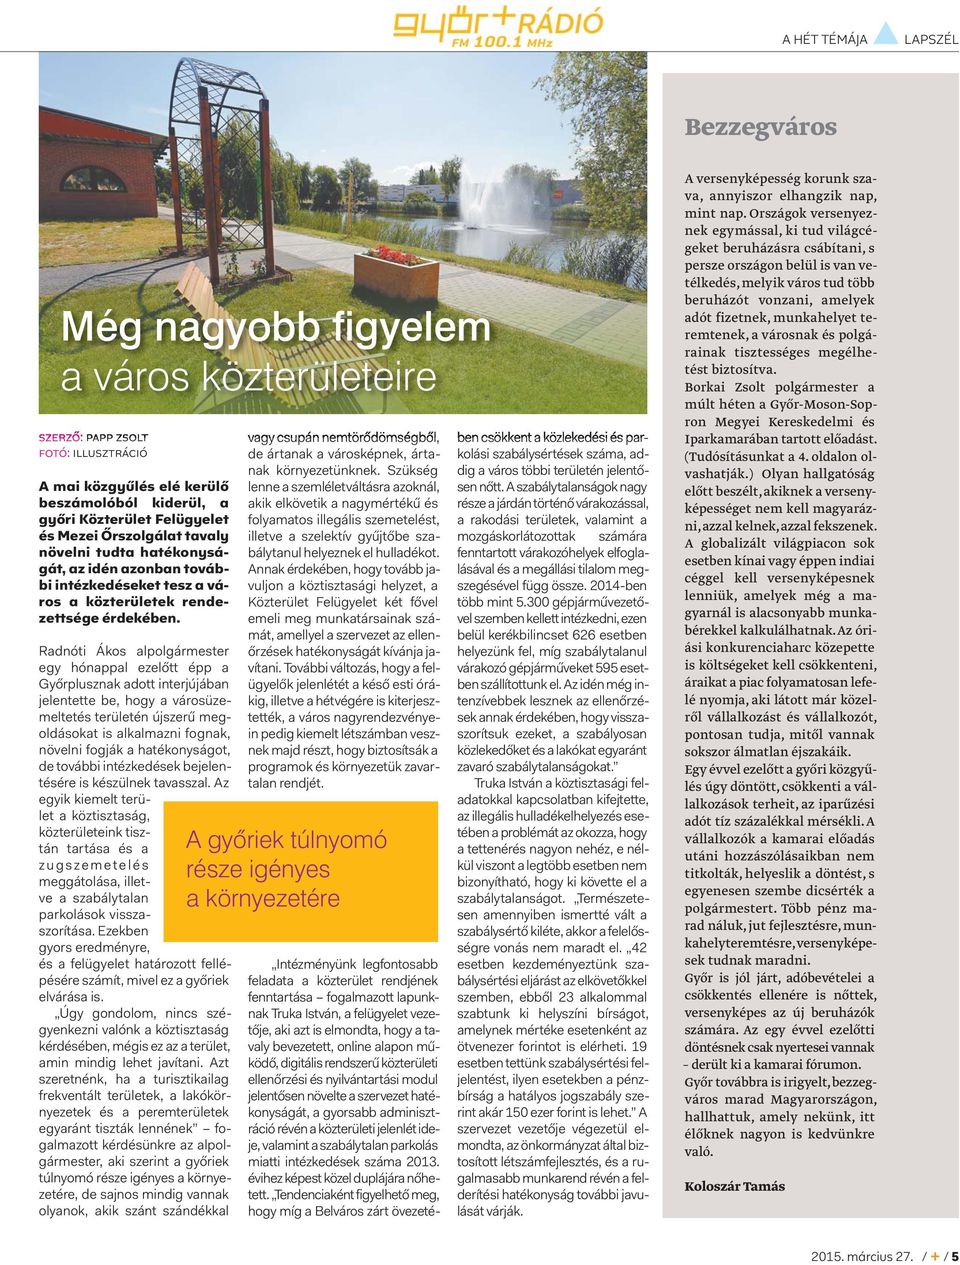 Radnóti Ákos alpolgármester egy hónappal ezelőtt épp a Győrplusznak adott interjújában jelentette be, hogy a városüzemeltetés területén újszerű megoldásokat is alkalmazni fognak, növelni fogják a